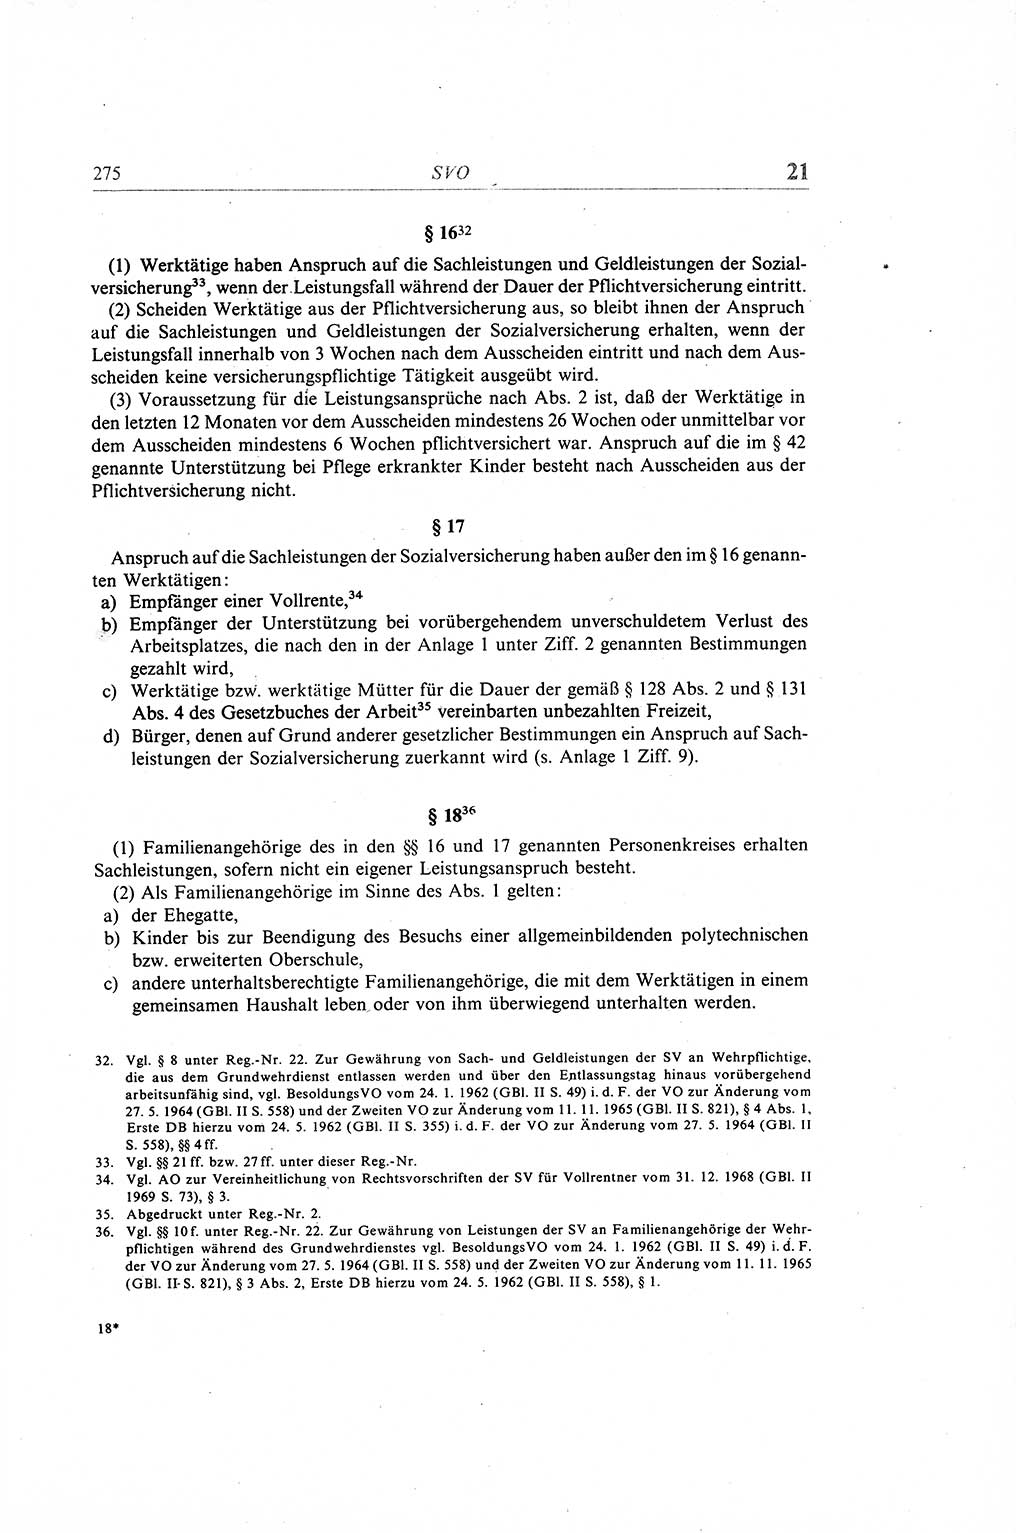 Gesetzbuch der Arbeit (GBA) und andere ausgewählte rechtliche Bestimmungen [Deutsche Demokratische Republik (DDR)] 1968, Seite 275 (GBA DDR 1968, S. 275)